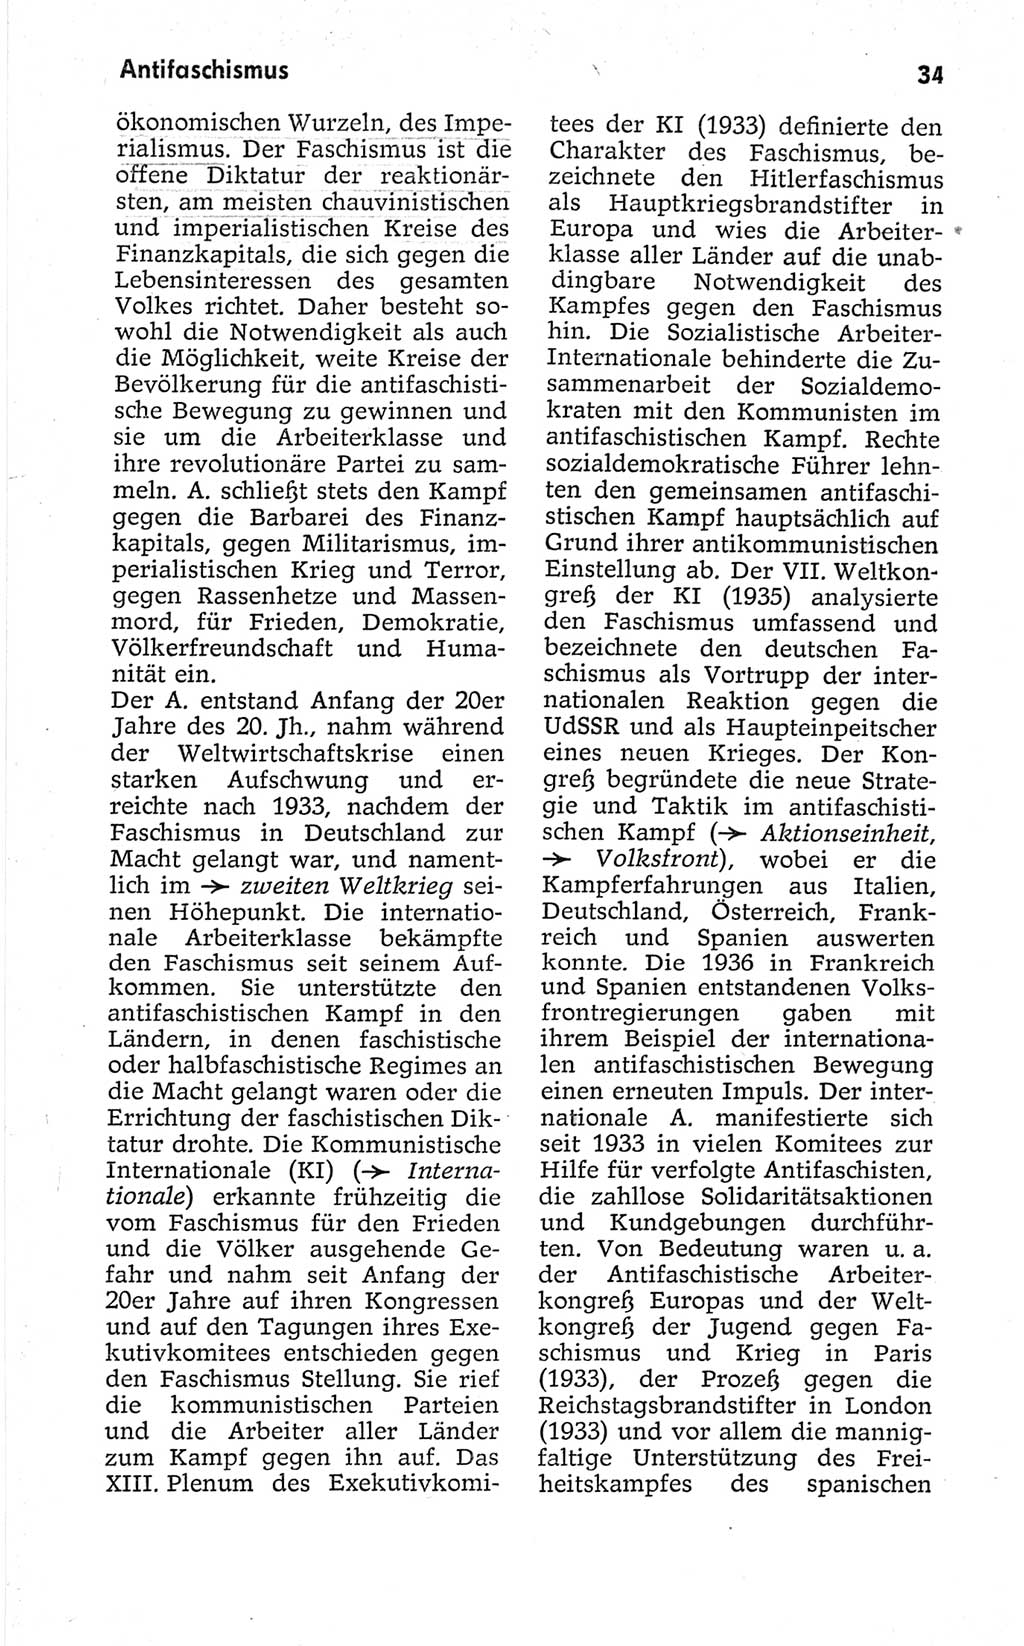 Kleines politisches Wörterbuch [Deutsche Demokratische Republik (DDR)] 1967, Seite 34 (Kl. pol. Wb. DDR 1967, S. 34)